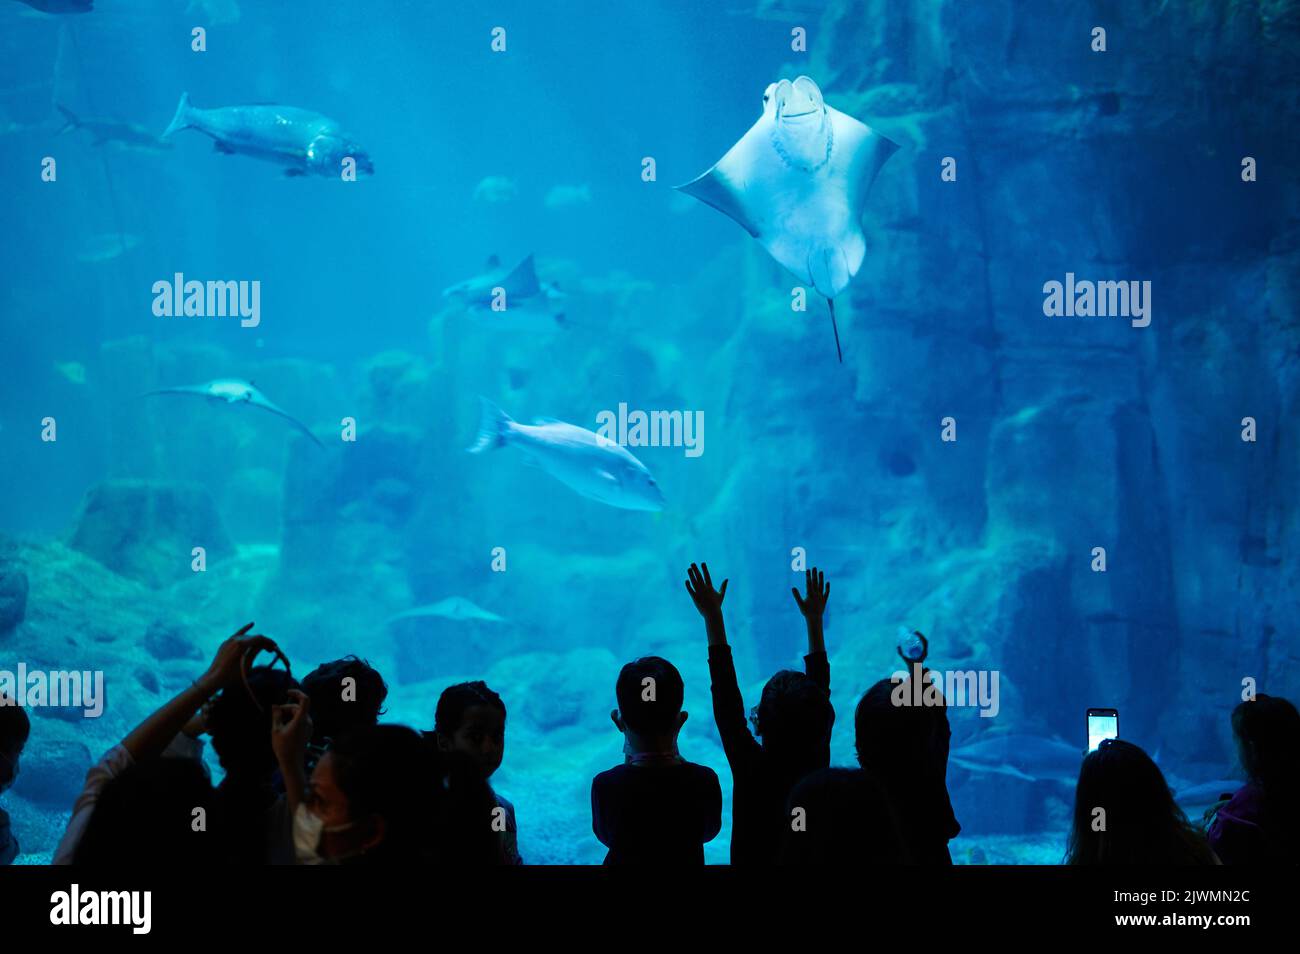 Die Menschen beobachten das Unterwasserleben im Aquarium. Viele Fische im blauen Wasser mit Menschen Silhouette Stockfoto